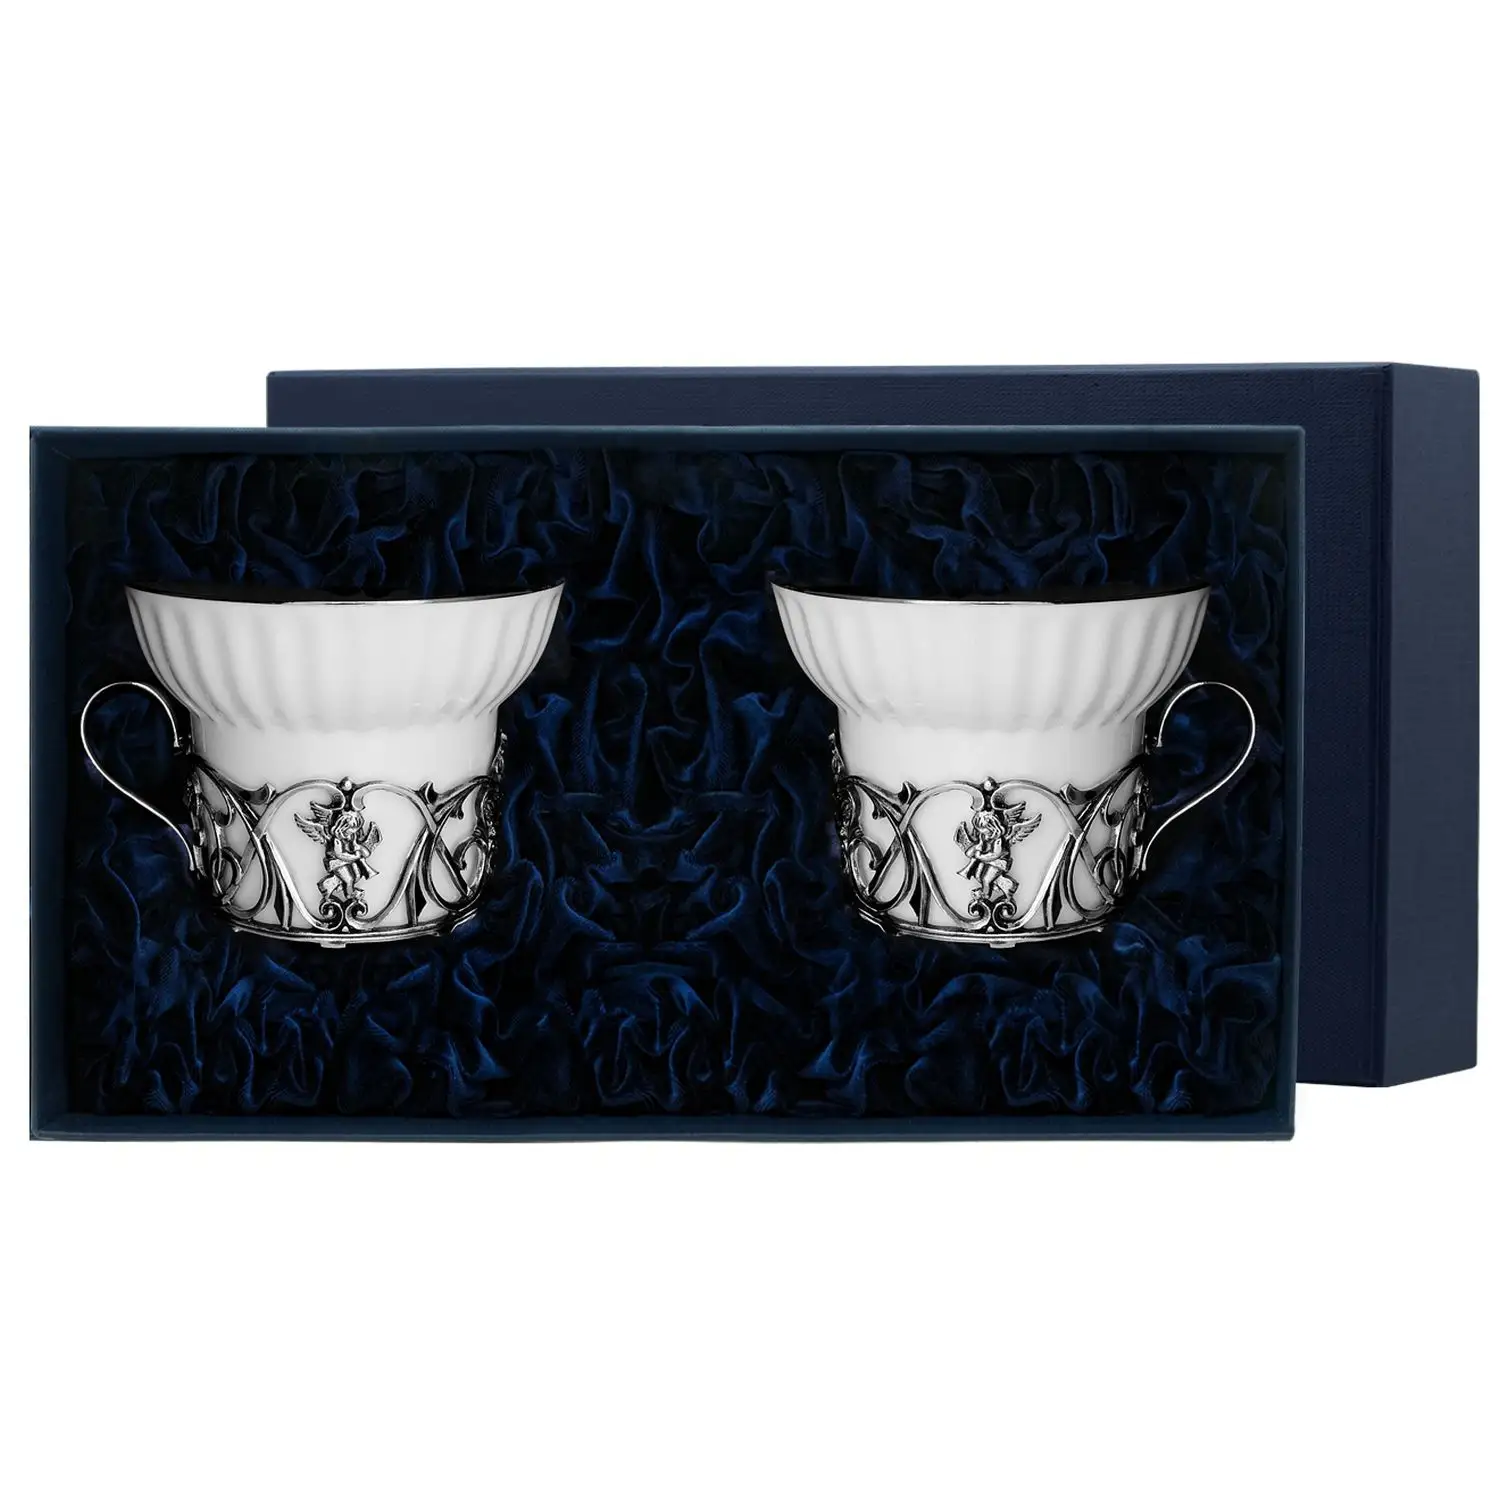 Чайная чашка Ангел с чернением (Серебро 925) чашка чайная тетерев с чернением серебро 925